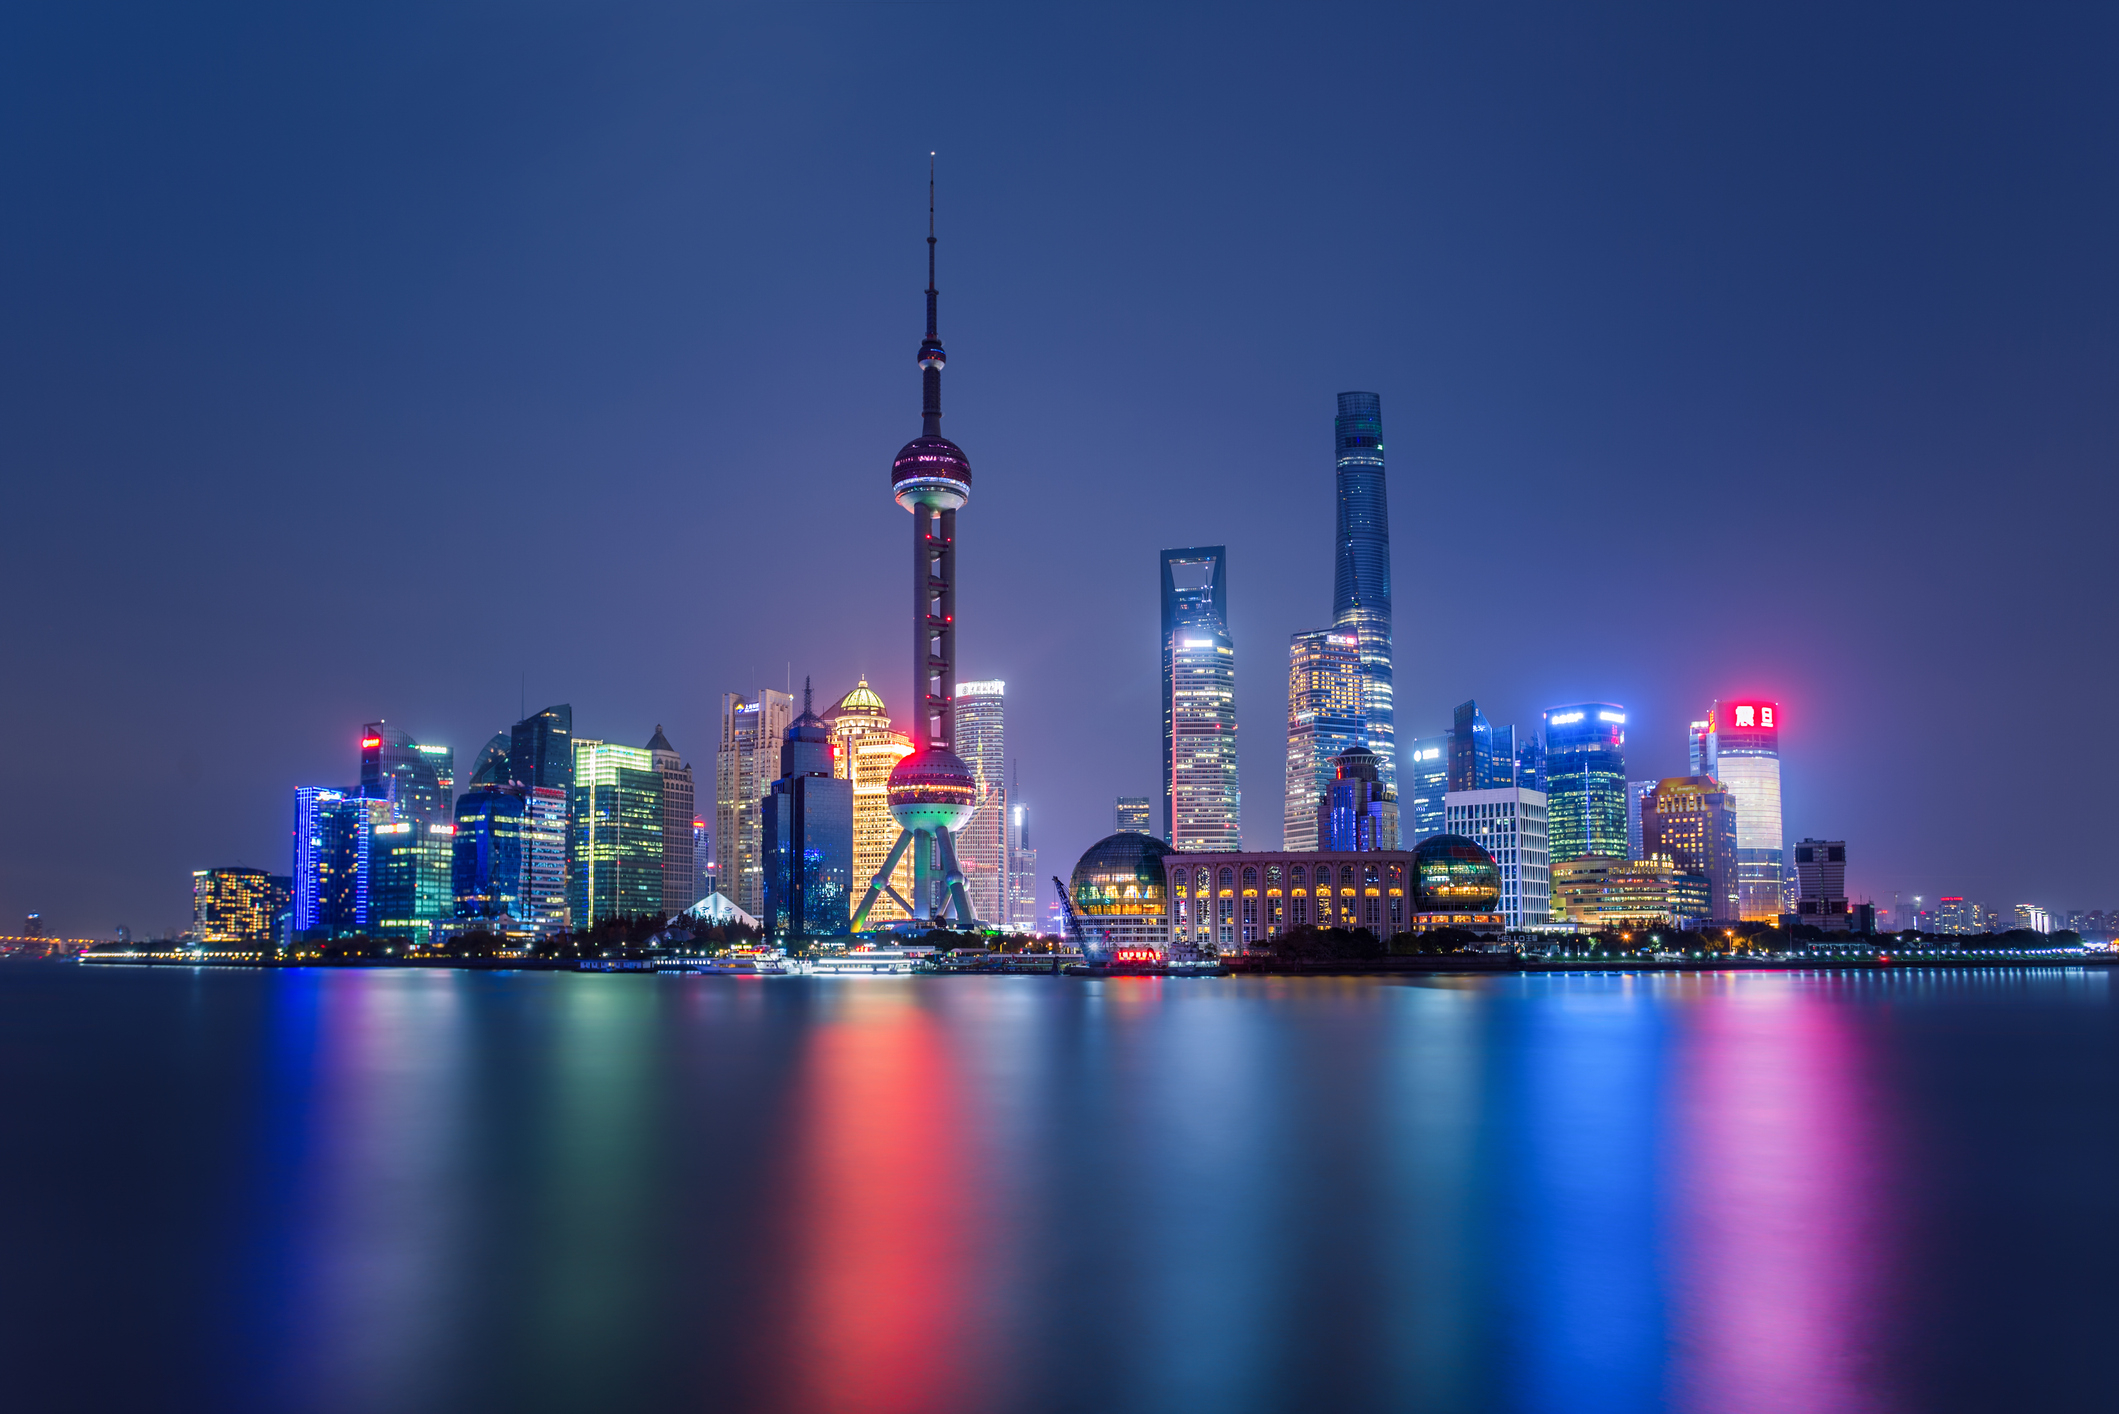 Illuminated Shanghai Skyline Reflecting On River.